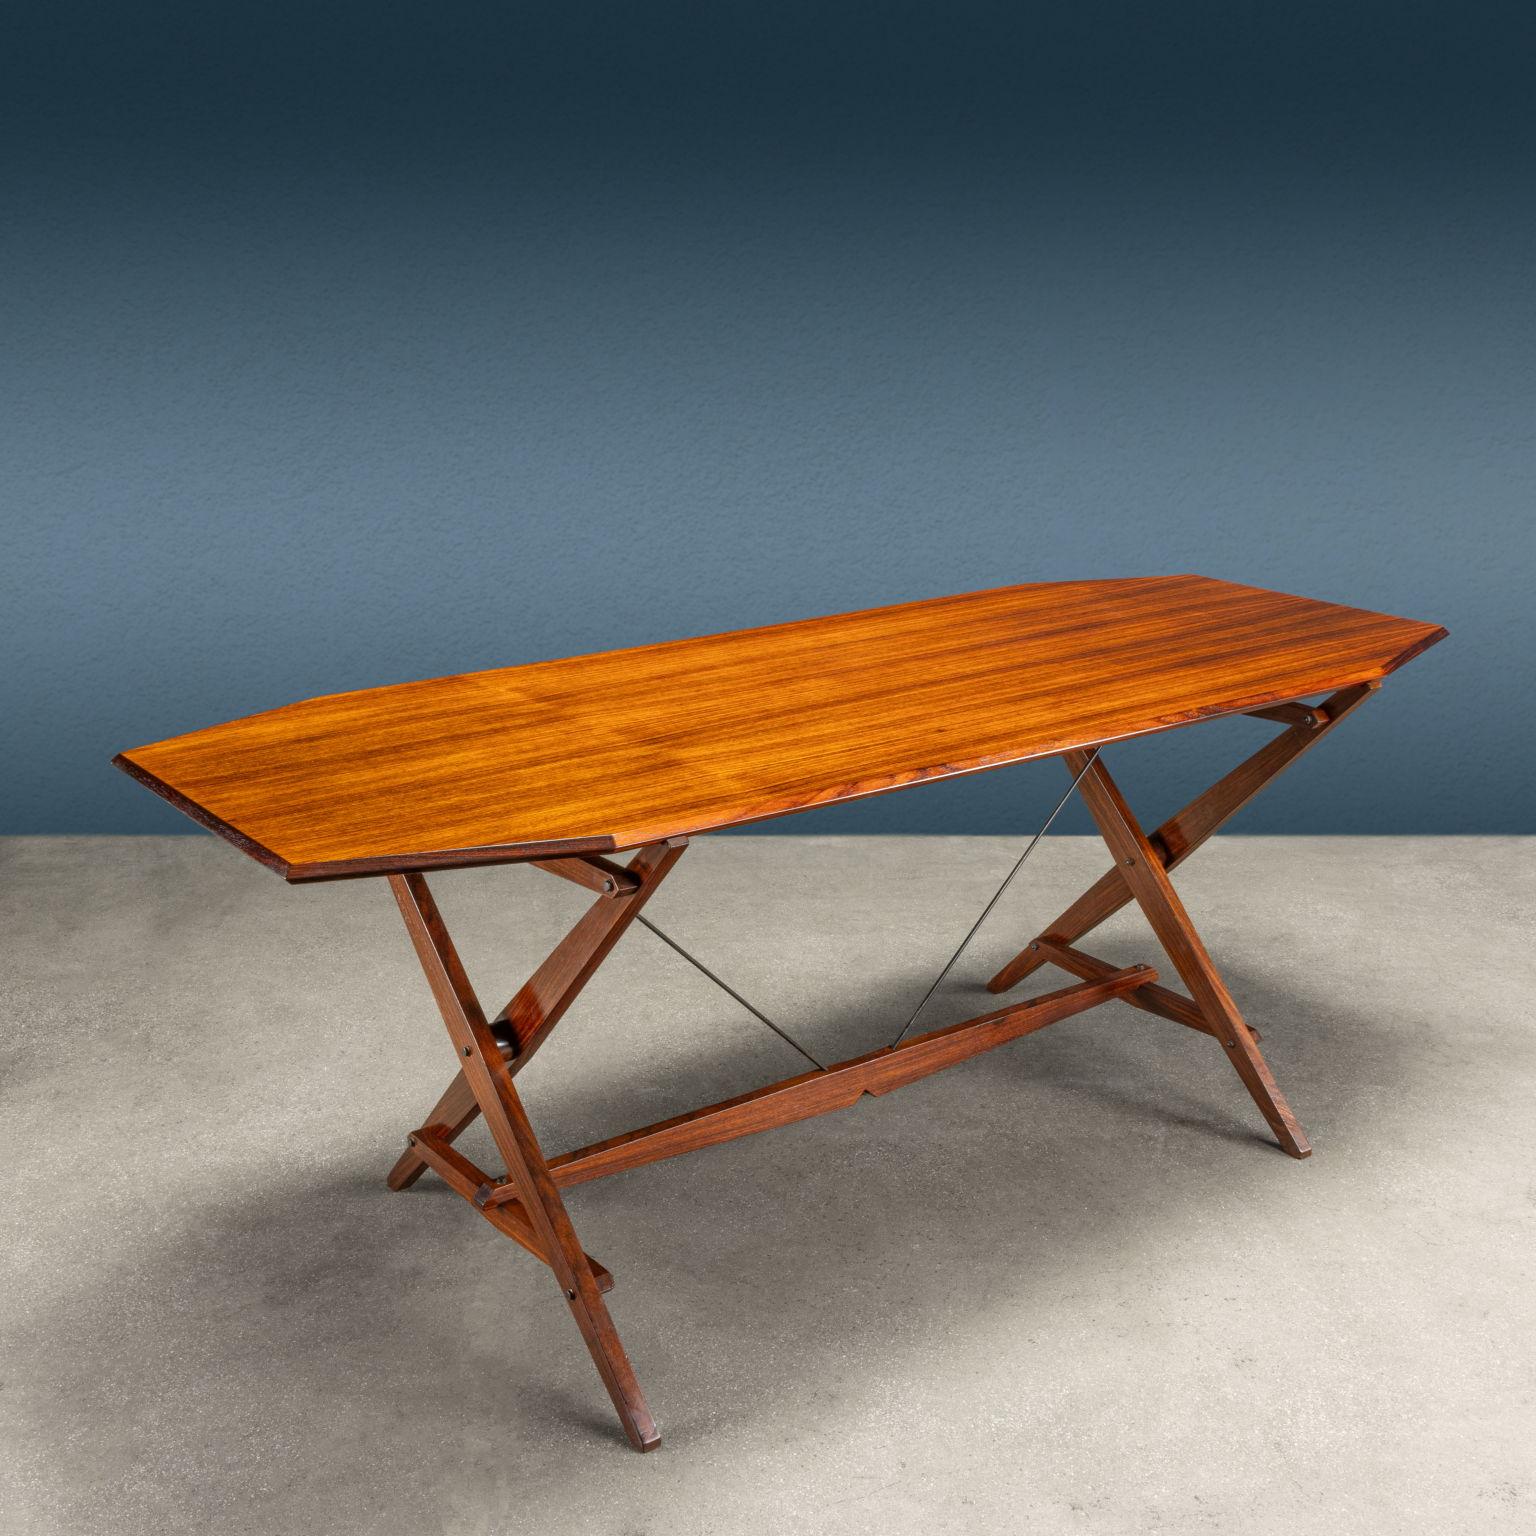 Tavolo a cavalletto modello 'TL2' disegnato da Franco Albini e prodotto da Poggi a partire dagli anni '50. Segnalato al
Compasso d'oro, questo tavolo ha come caratteristica principale quella di sembrare un oggetto provvisorio, smontabile e